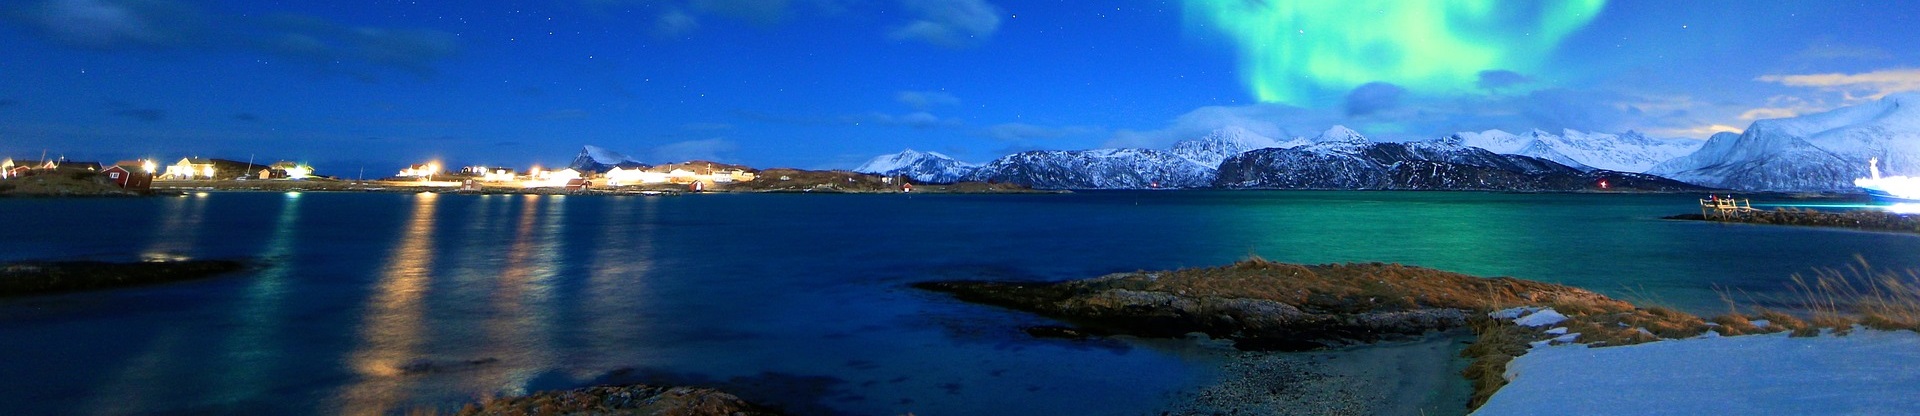 Vinterkall kväll med norrsken över insjö. I horisonten syns en fiskeby till vänster och en snötäckt bergskedja till höger..